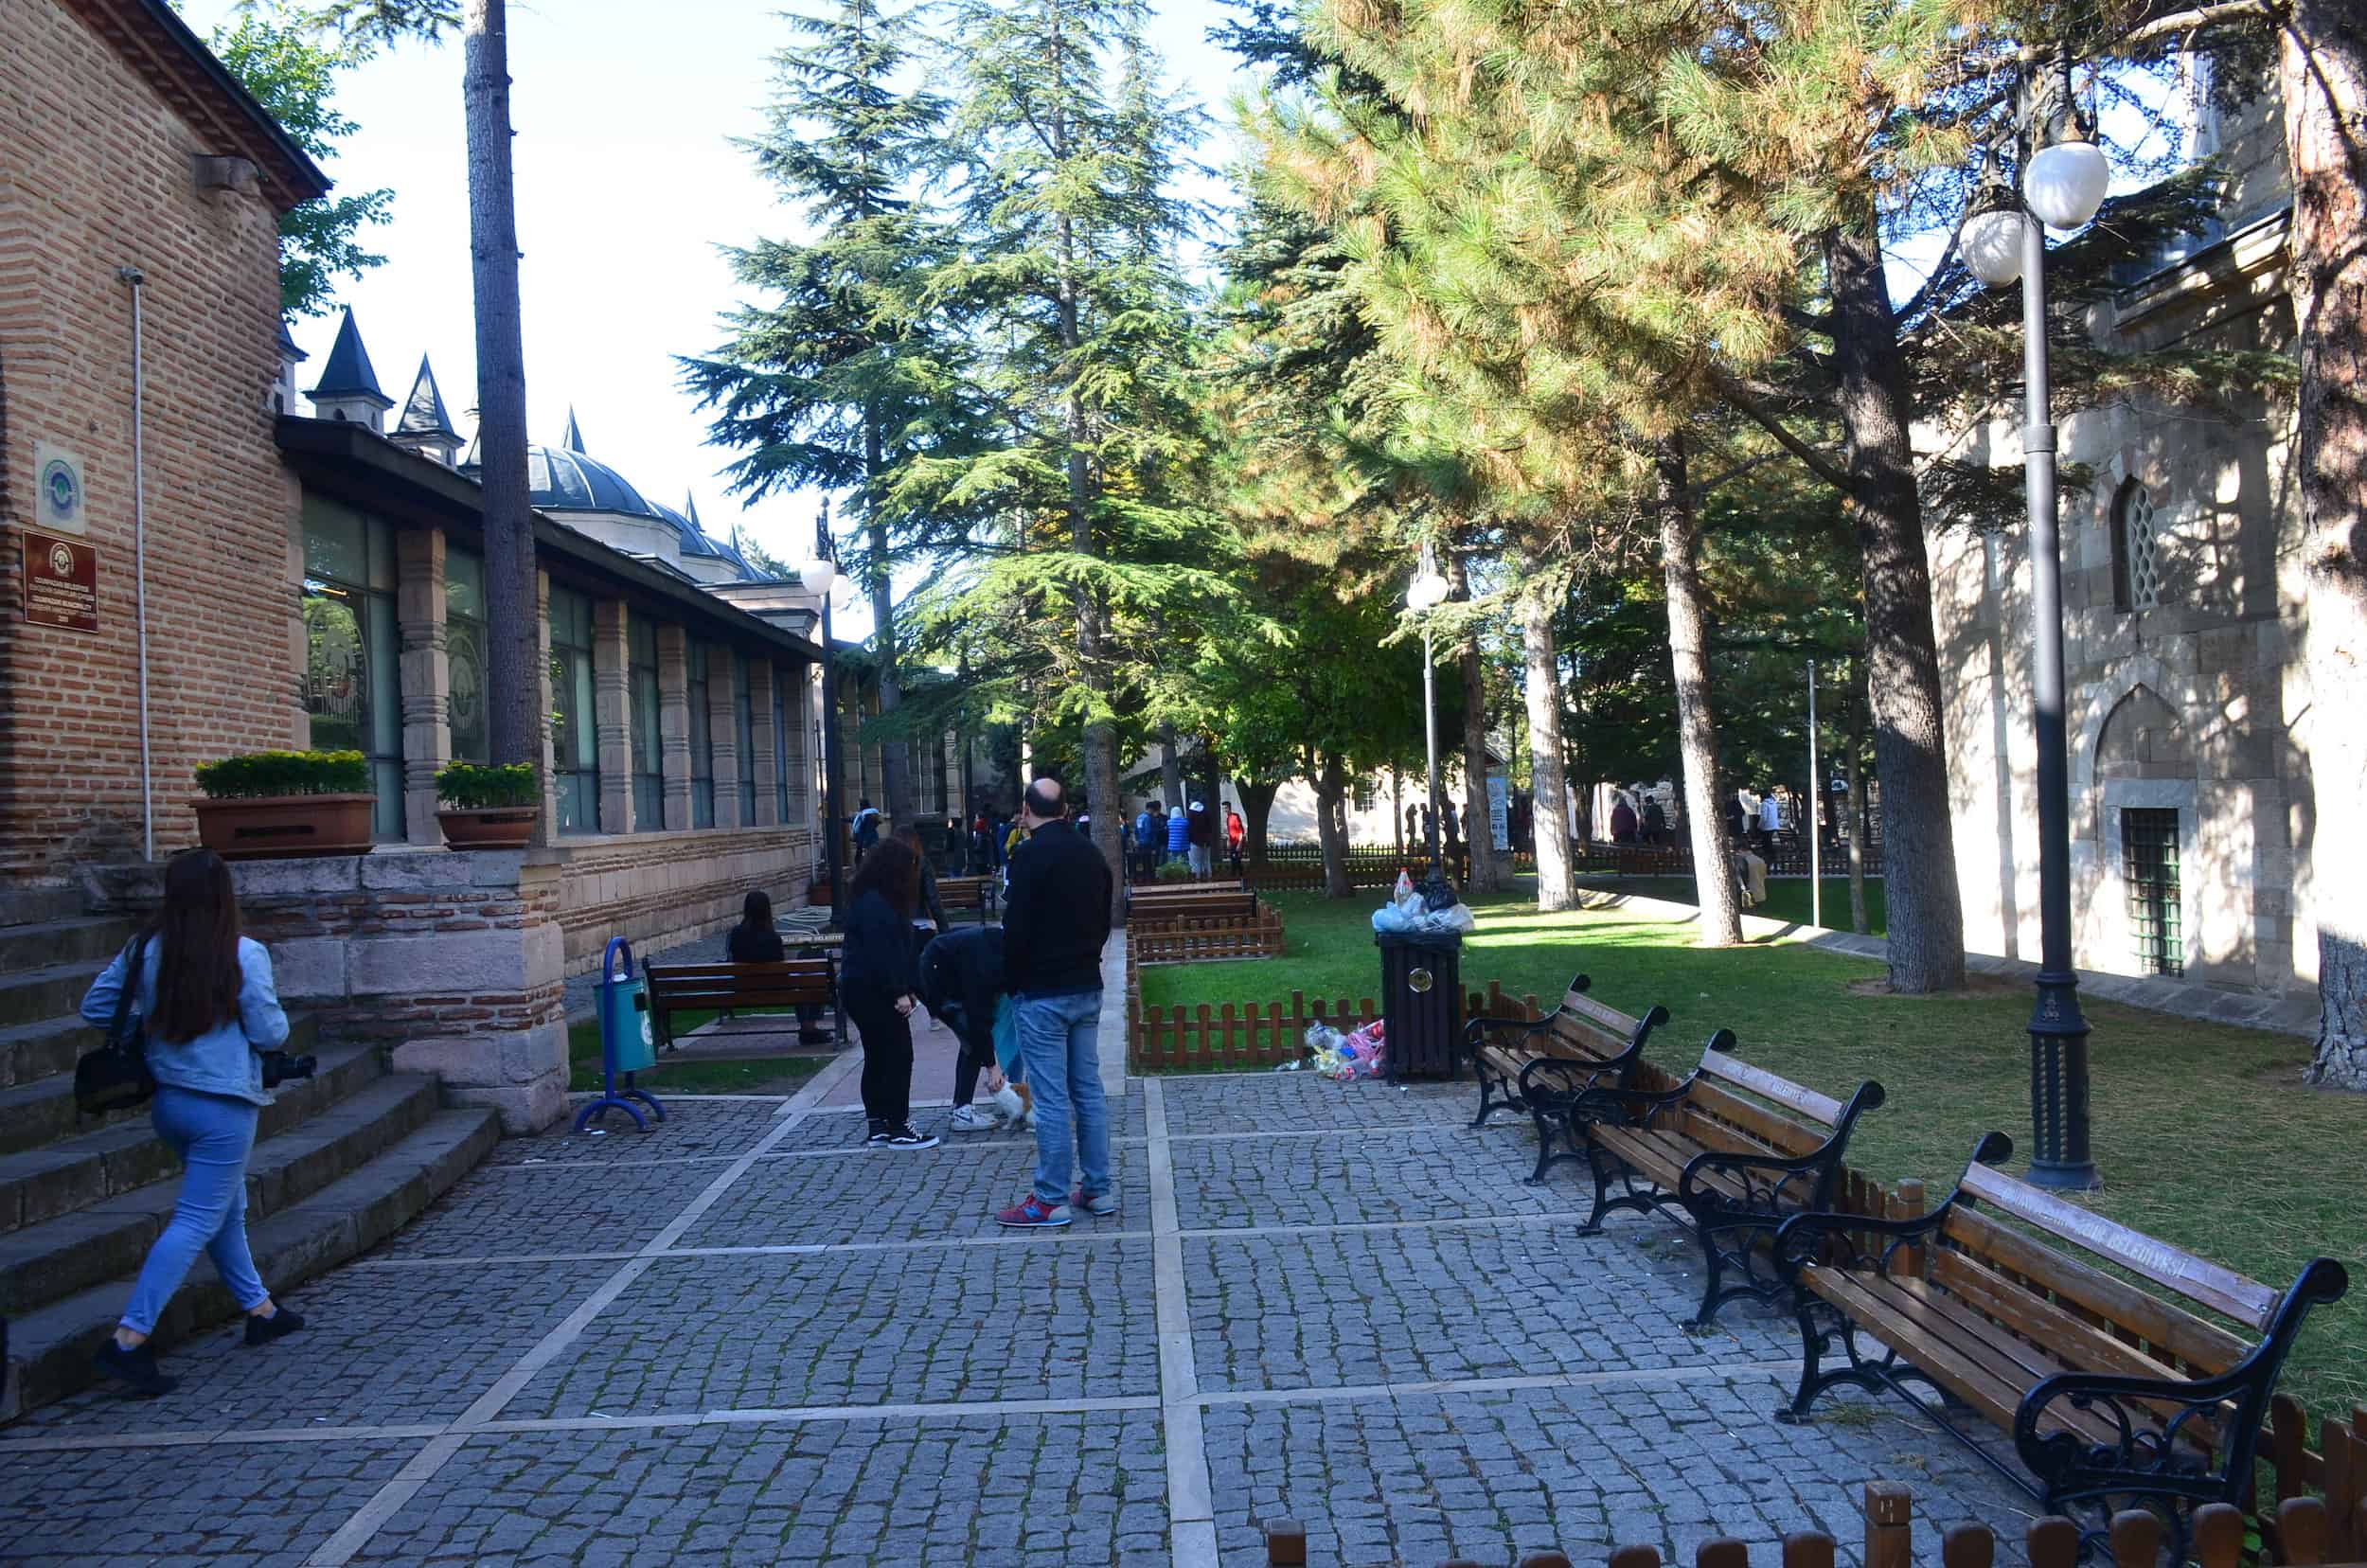 Kurşunlu Complex in Odunpazarı, Eskişehir, Turkey